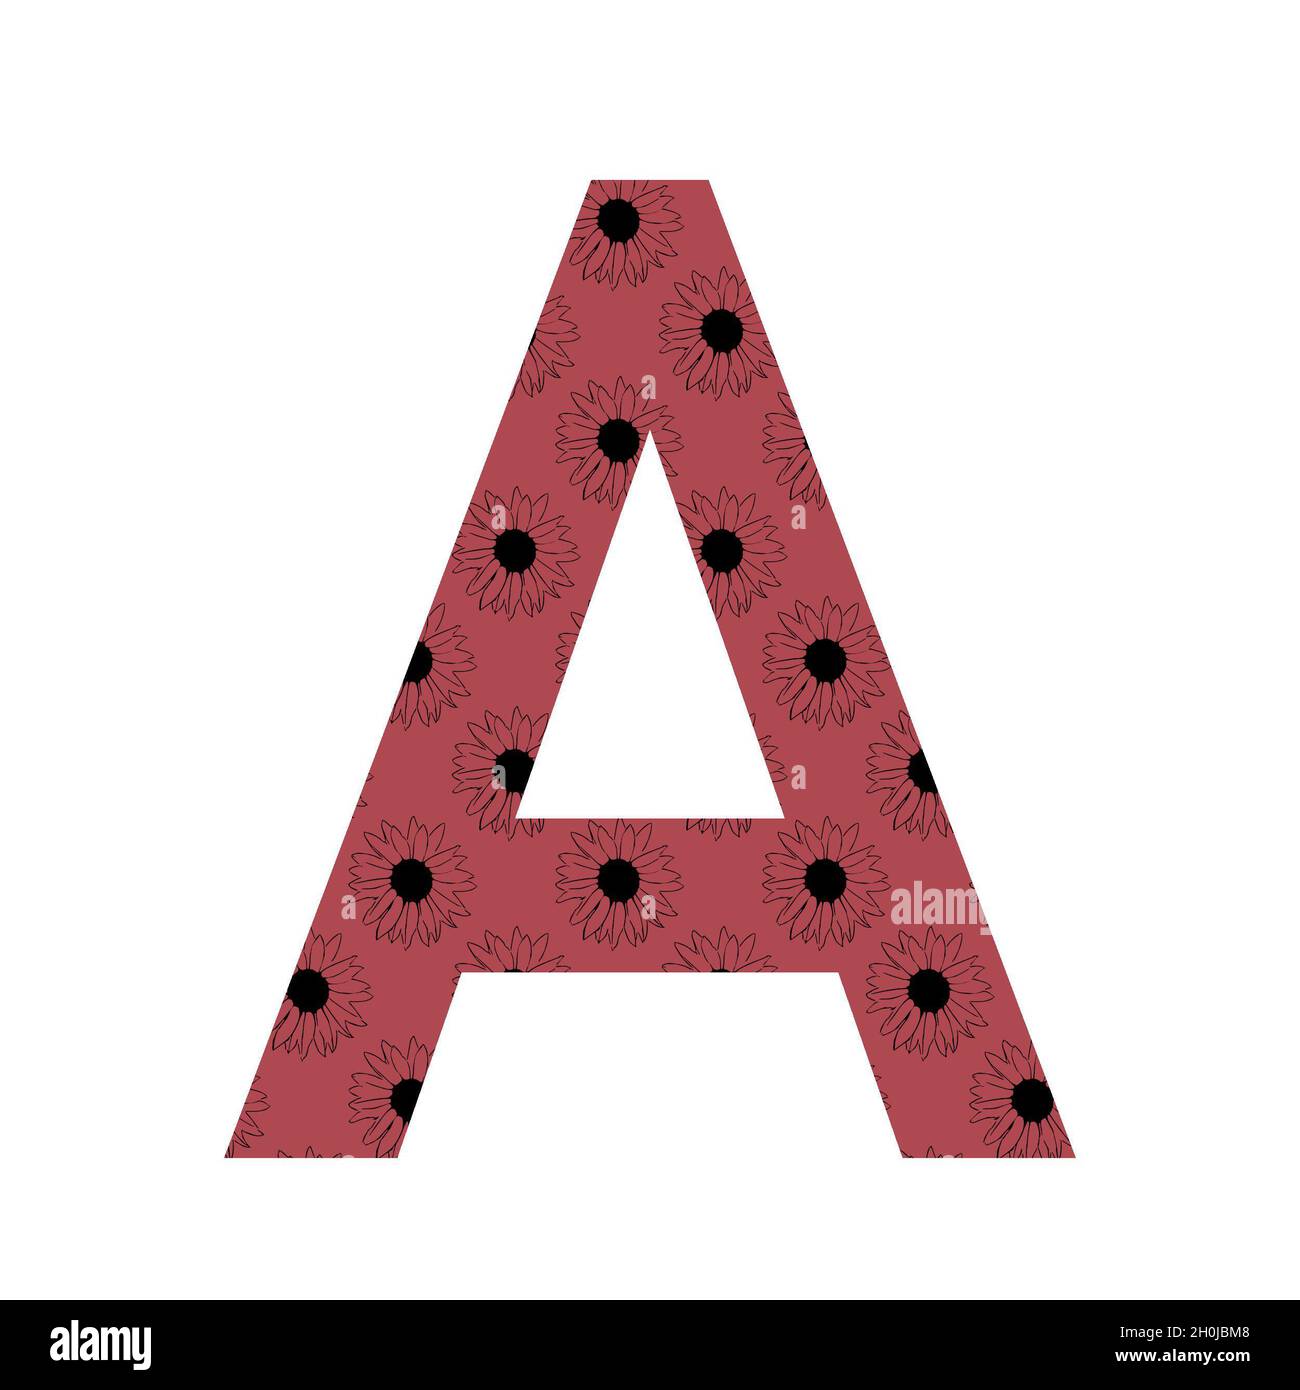 Lettre A de l'alphabet avec un motif de tournesols avec un fond rose foncé, isolé sur un fond blanc Banque D'Images